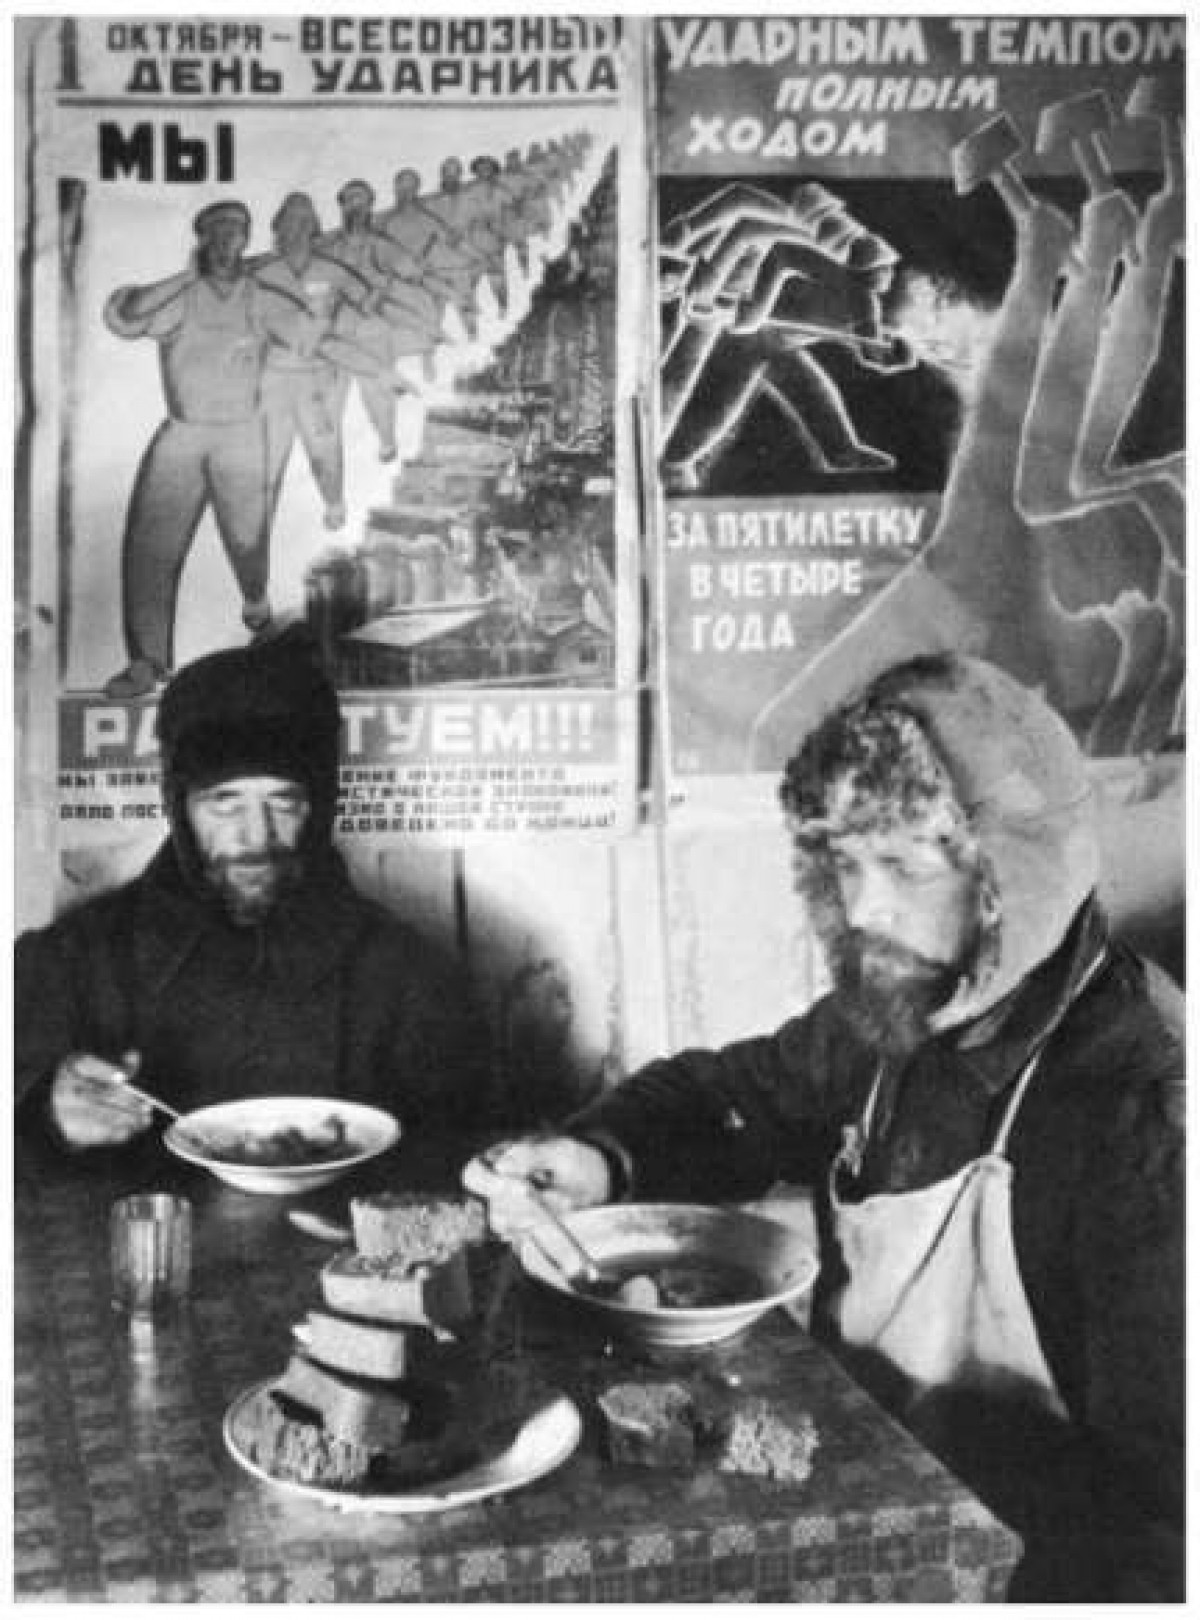 Hình ảnh trên do nhiếp ảnh gia Bourke-White chụp năm 1932 cho thấy, hai người thợ nề đang ăn, bên trên là những hình ảnh Liên Xô khuyến khích công nhân làm việc năng suất hơn. Vào thời điểm đó, Liên Xô đang thực hiện Kế hoạch 5 năm lần thứ nhất, một nỗ lực nhằm tập thể hóa nông nghiệp để nâng cao năng suất và tạo ra nguồn dự trữ ngũ cốc với số lượng đủ lớn để cung cấp cho người dân. Tuy nhiên, nỗ lực đã gây khó khăn cho nhiều người./.